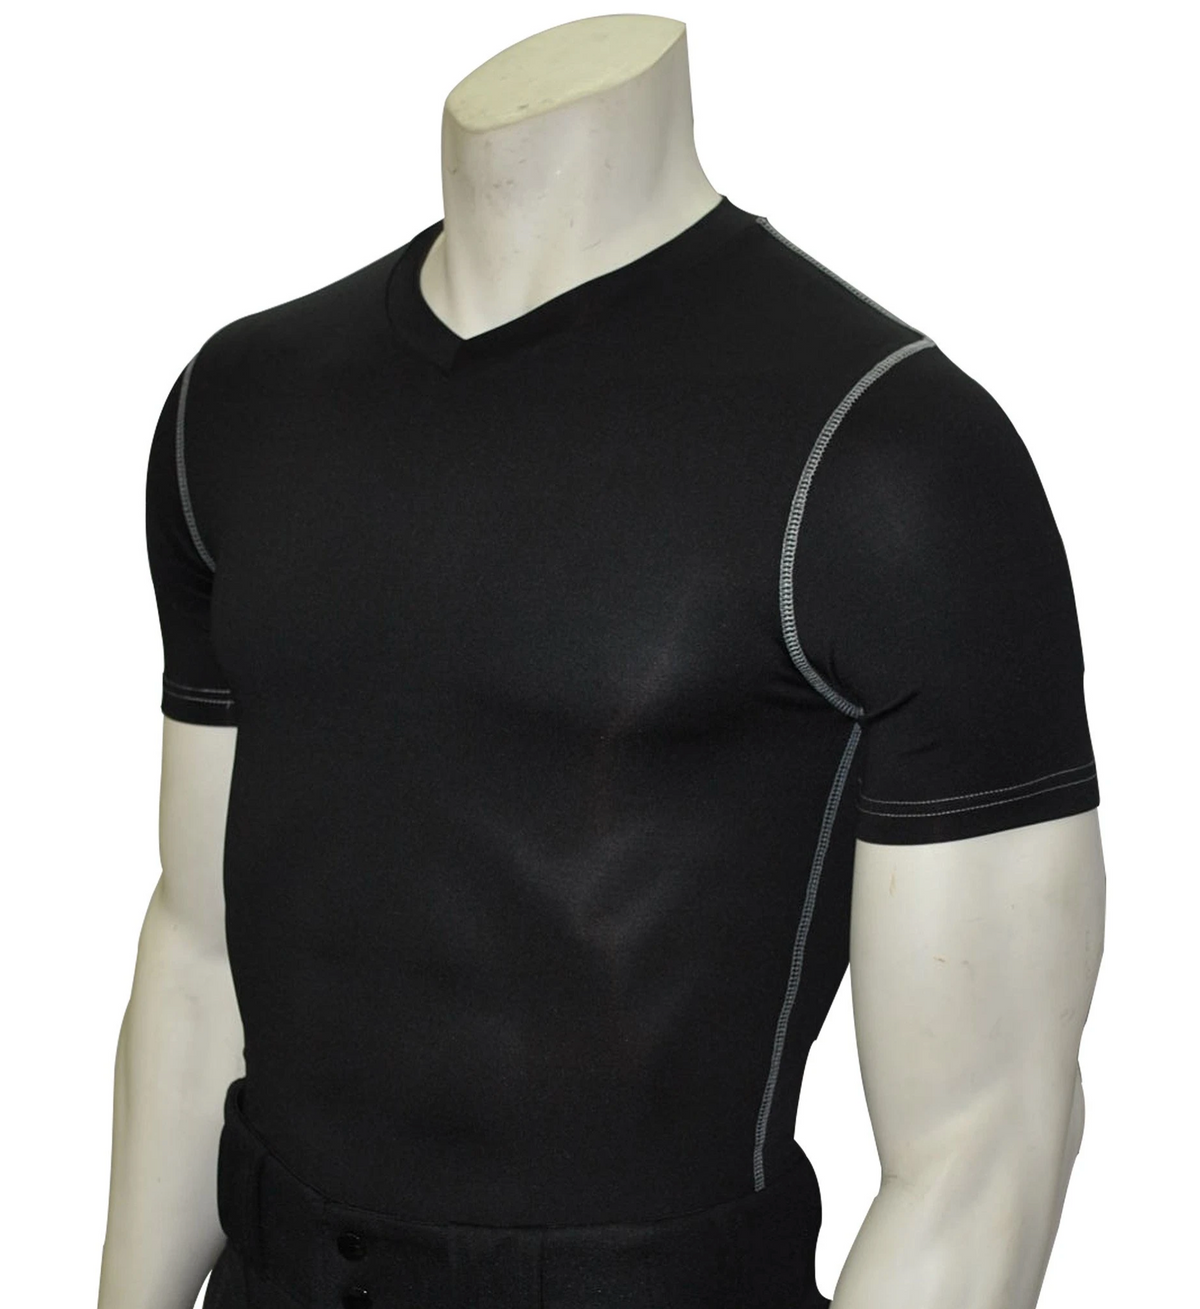 Smitty, BKS-411, Black, Compression Short Sleeve V- Neck Shirt